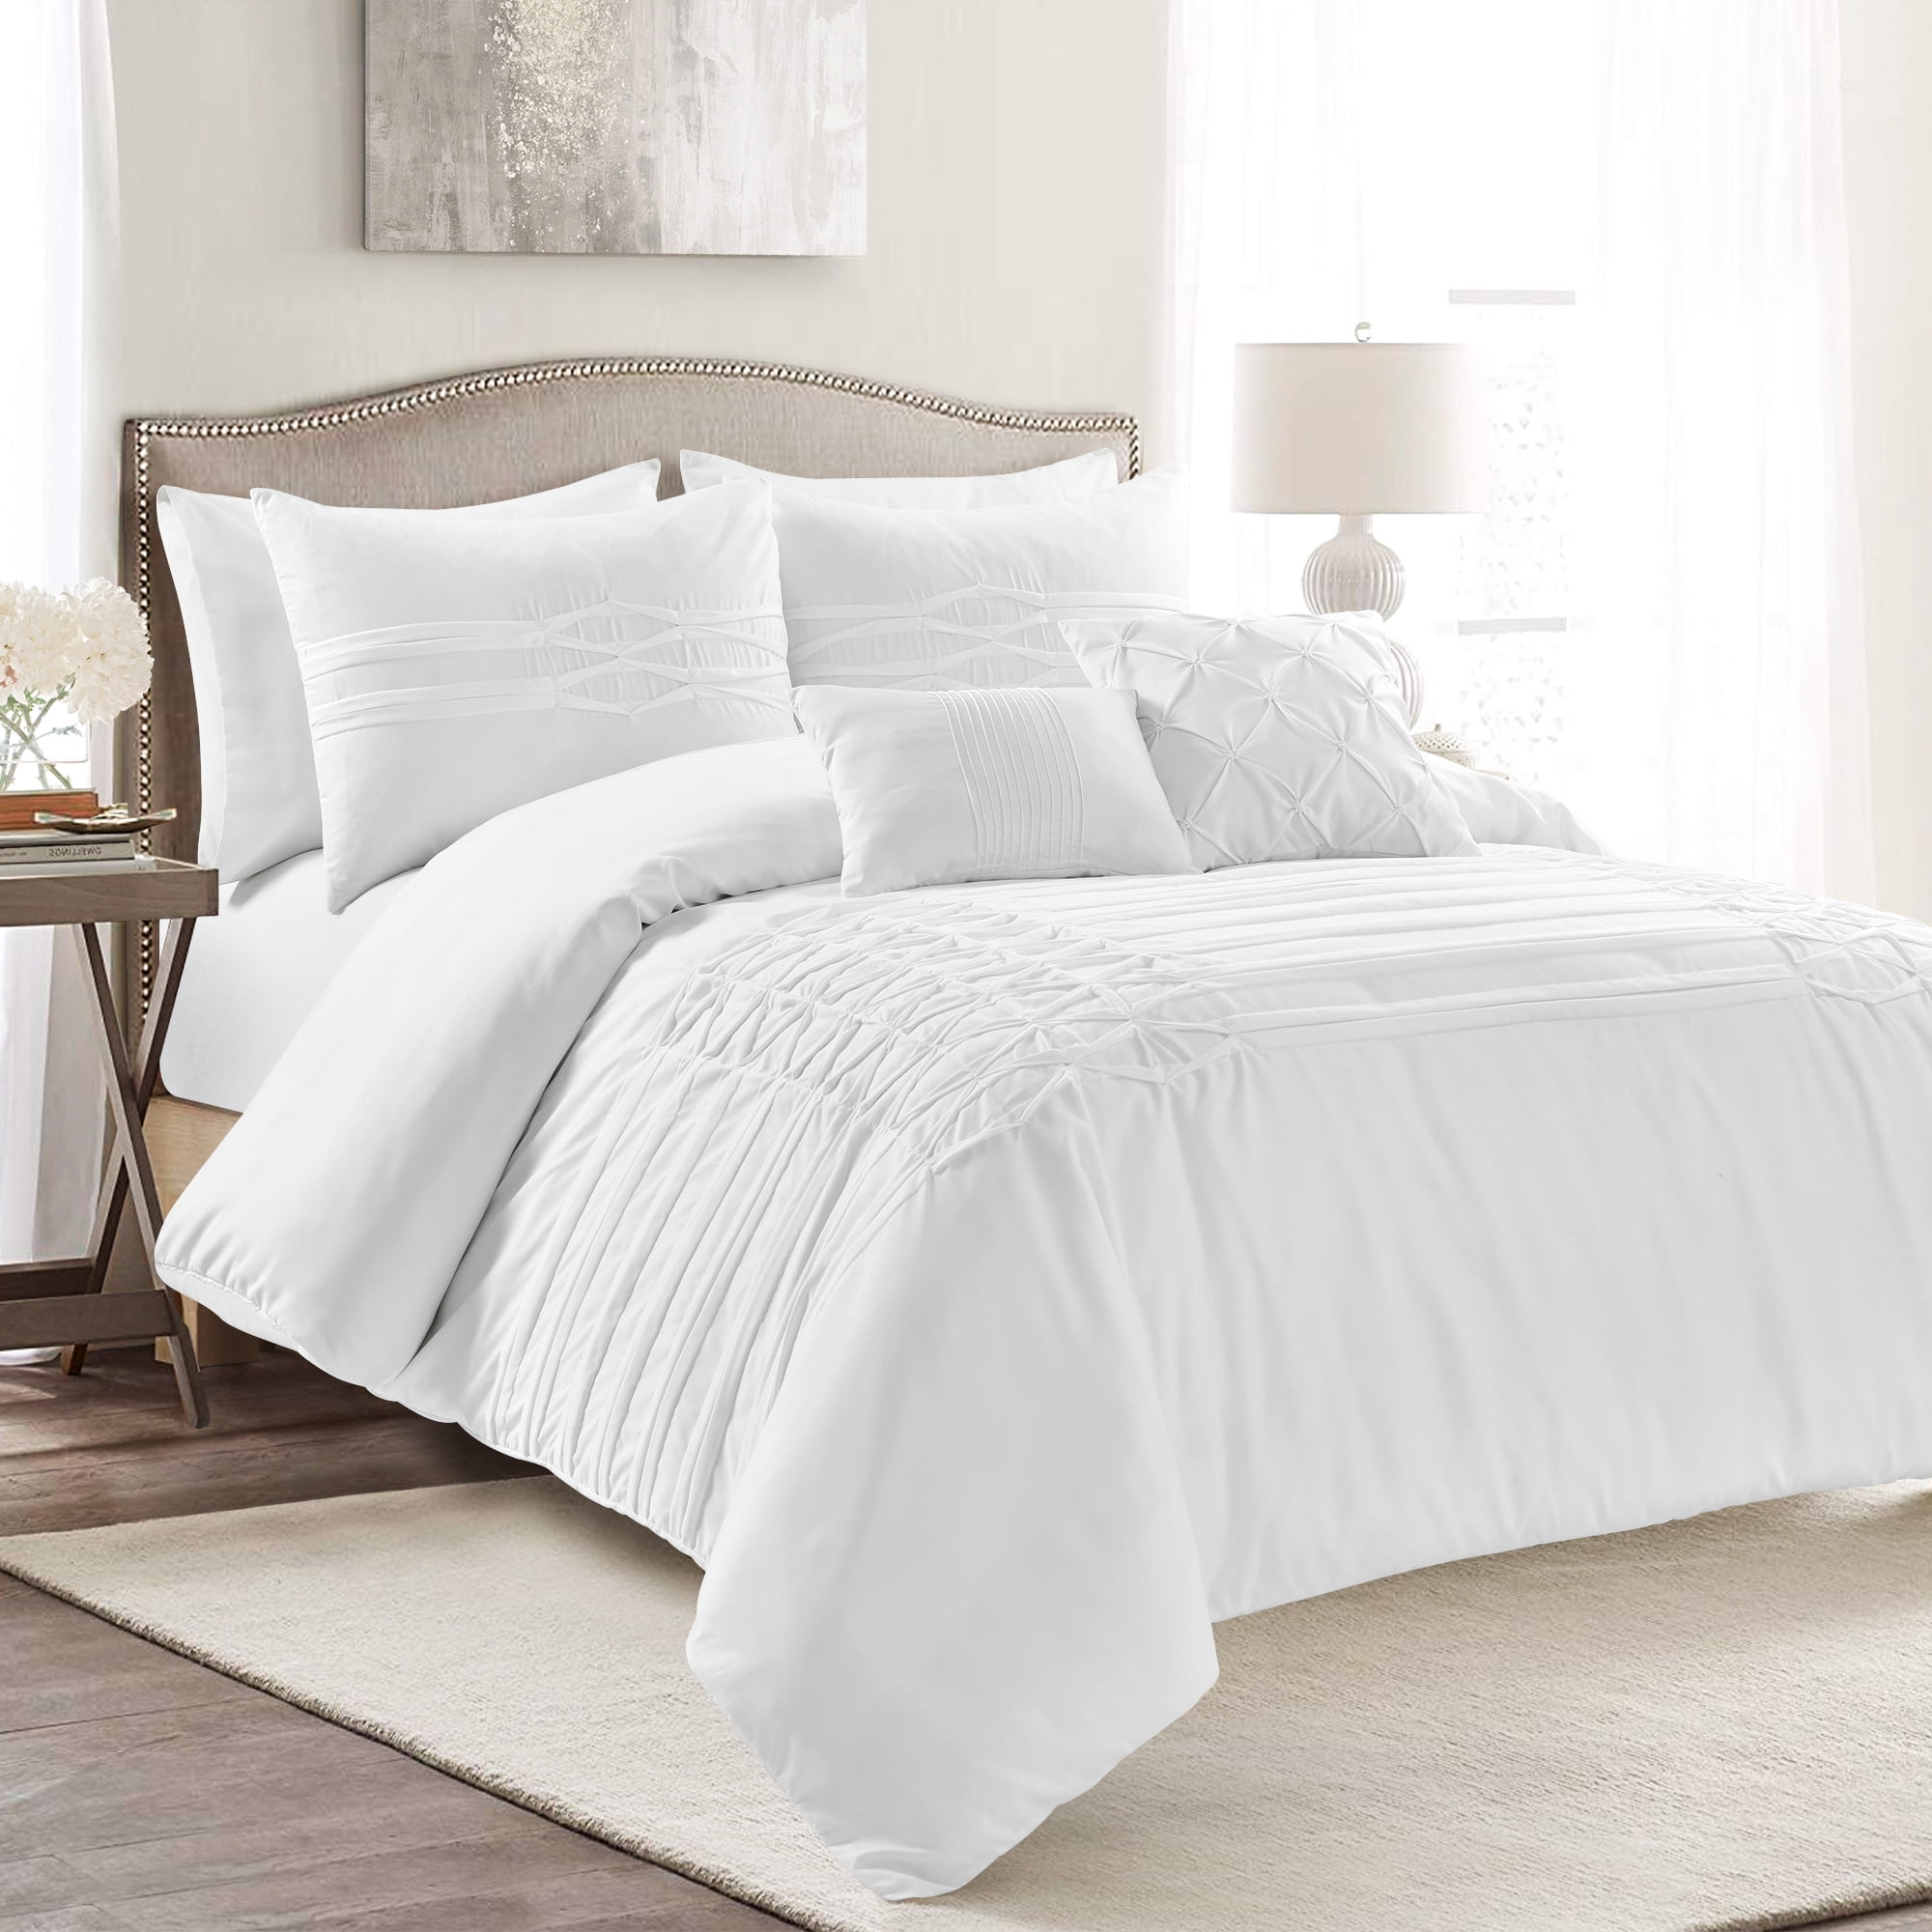 Luxury 8pc White Textured Farmhouse Comforter Set AND Decorative Pillows 